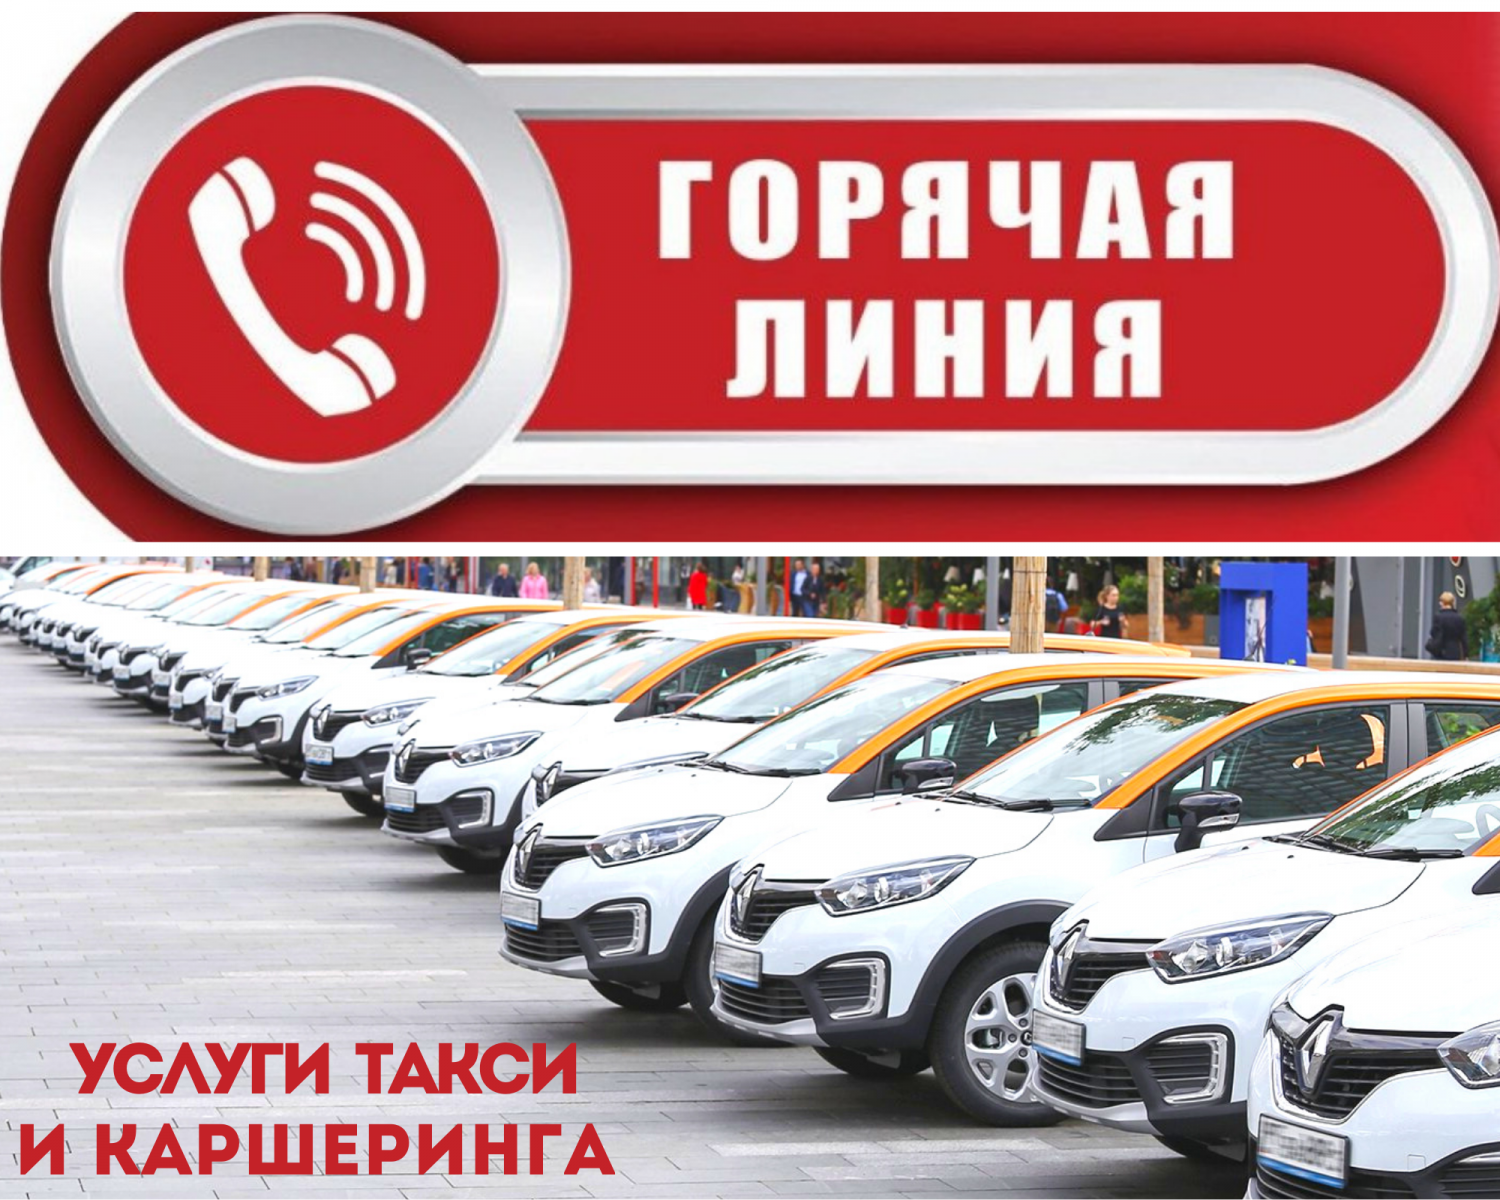 В Челябинской области, в период с 13 по 24 ноября будет работать телефонная «горячая линия» по услугам такси и каршеринга